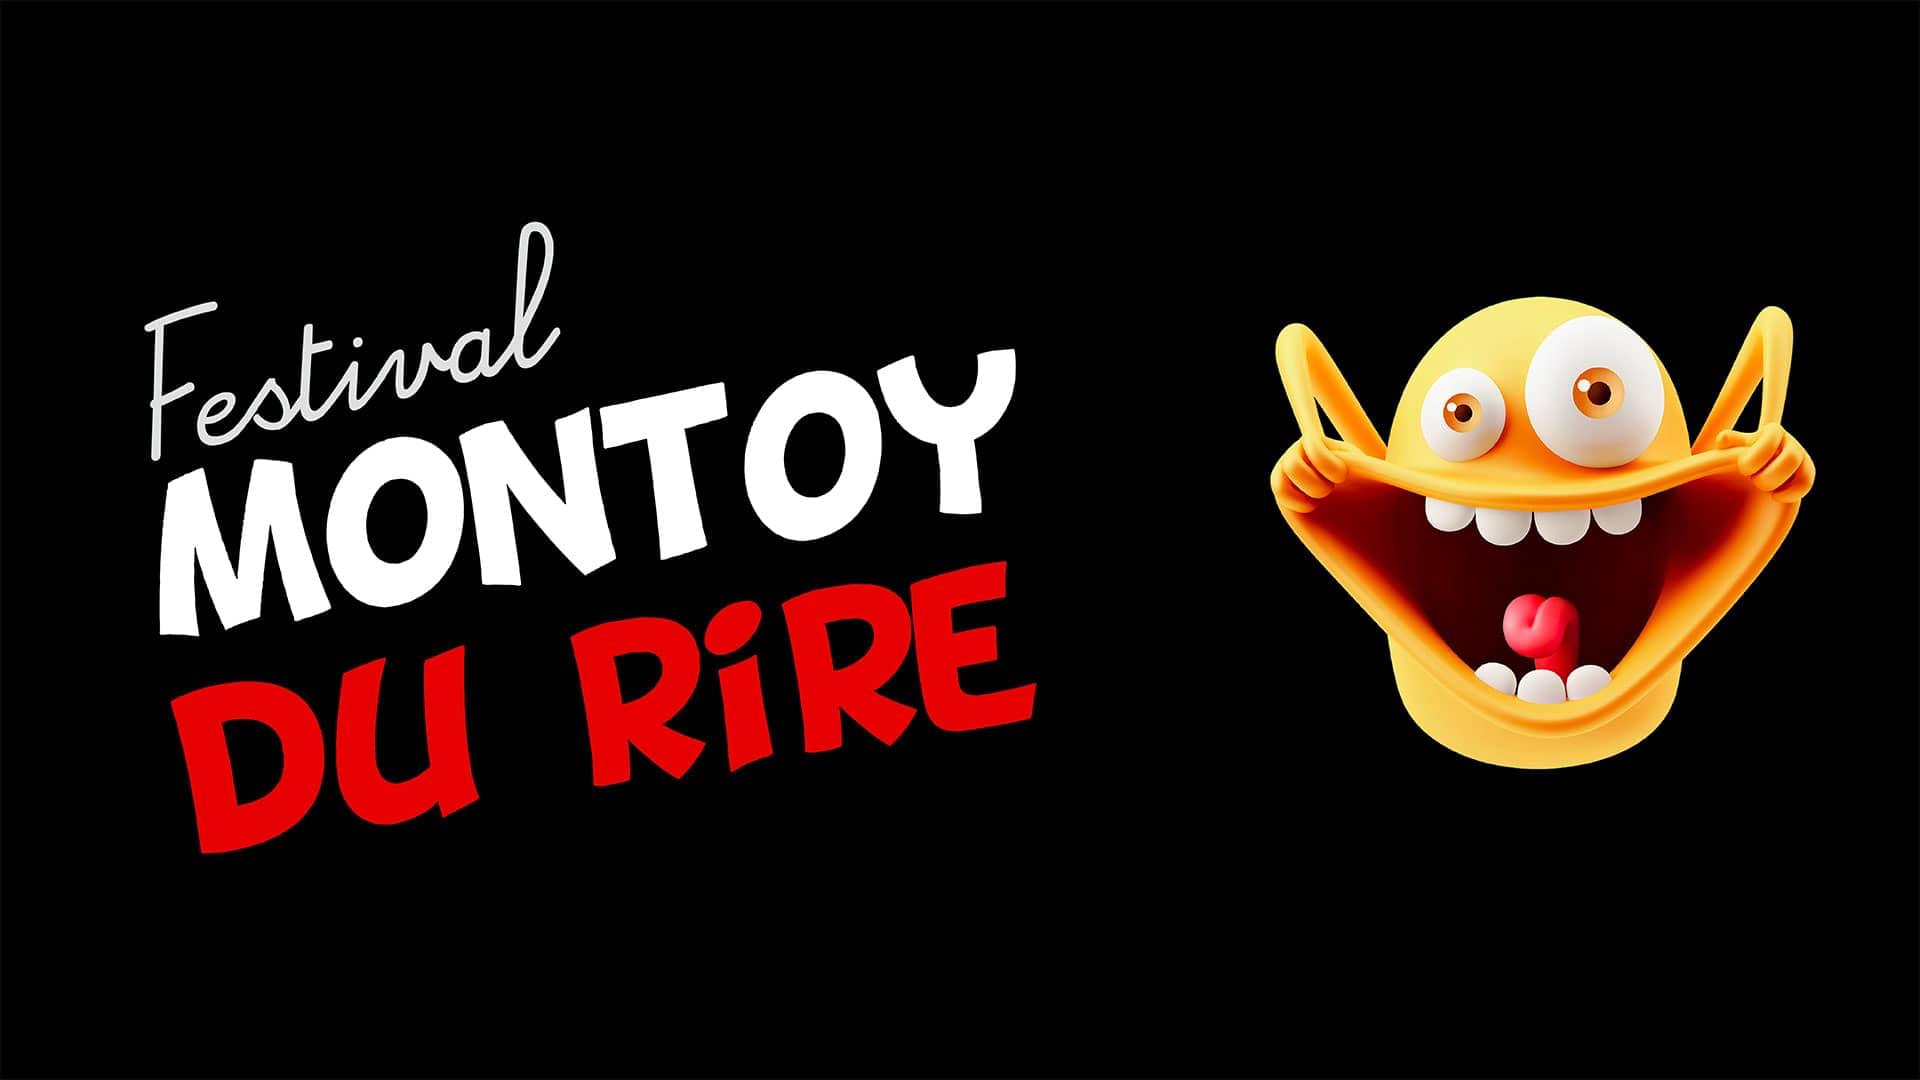 Festival Montoy du rire - Le festival d'humour incontournable de la région !